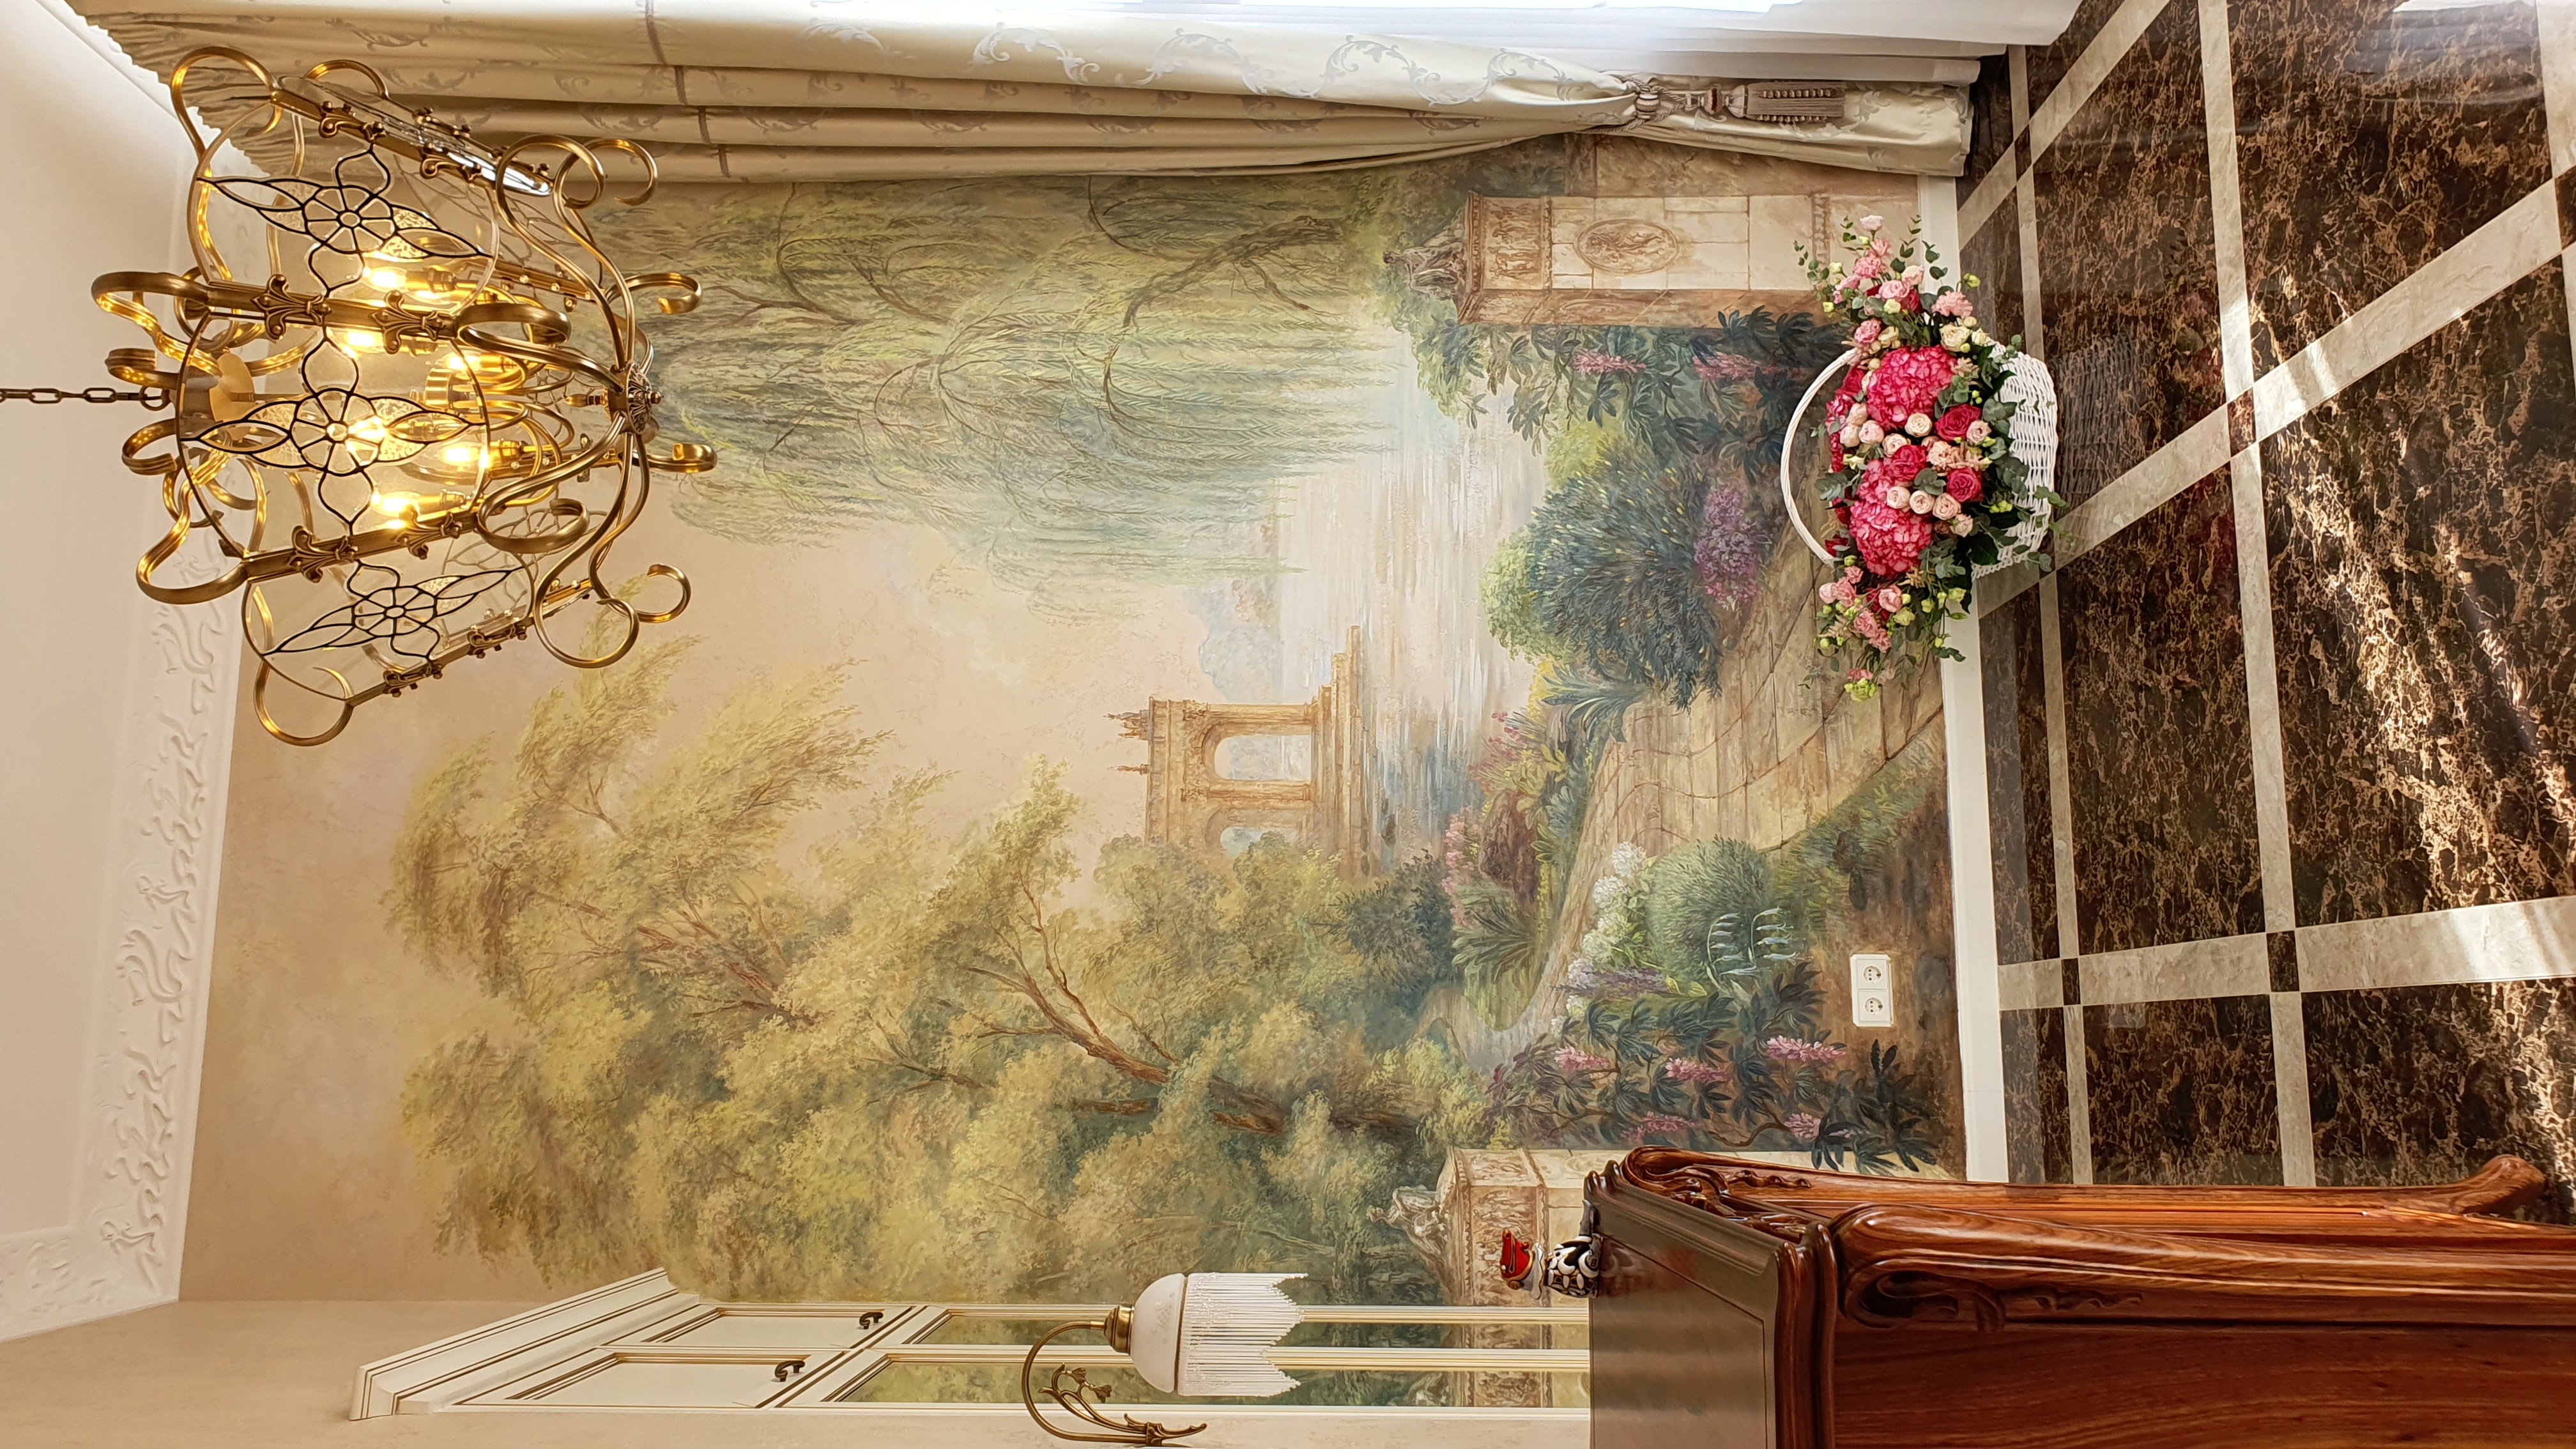 художник Елена Ковалевская выполнила настенную роспись в холле